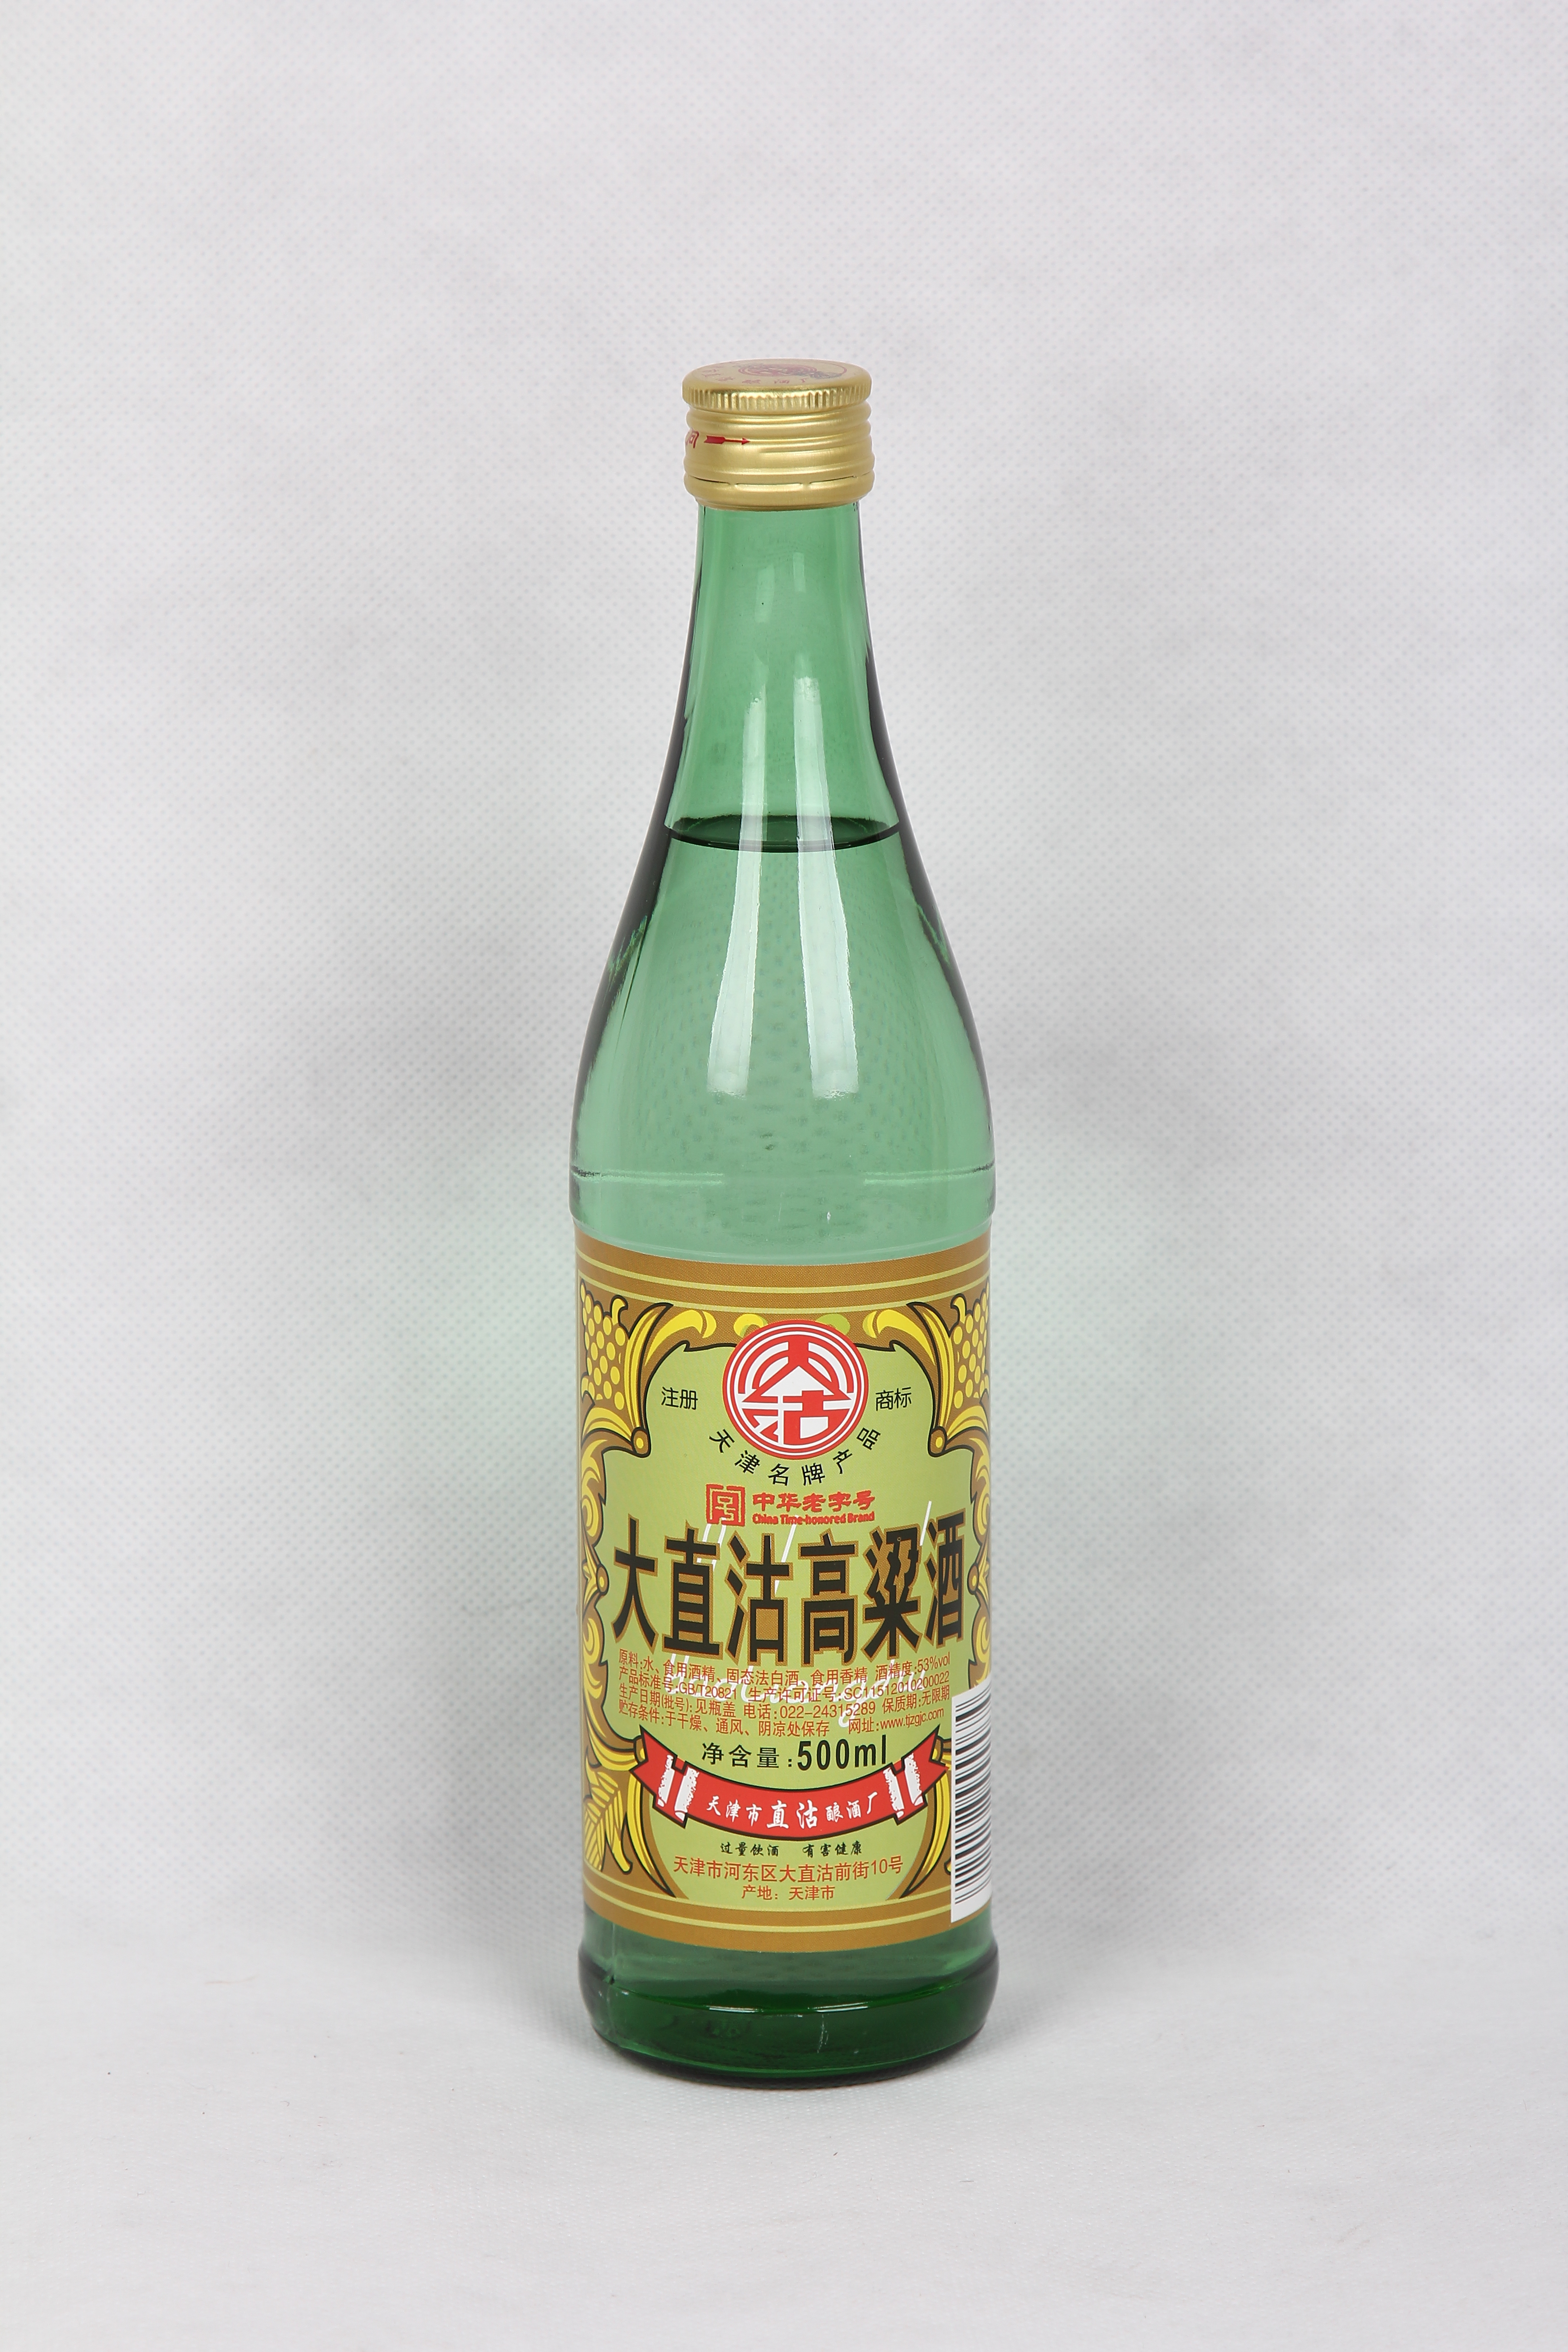 53度大直沽高粱酒 白酒系列 香型:清香型 净含量:500ml 酒精度:53%